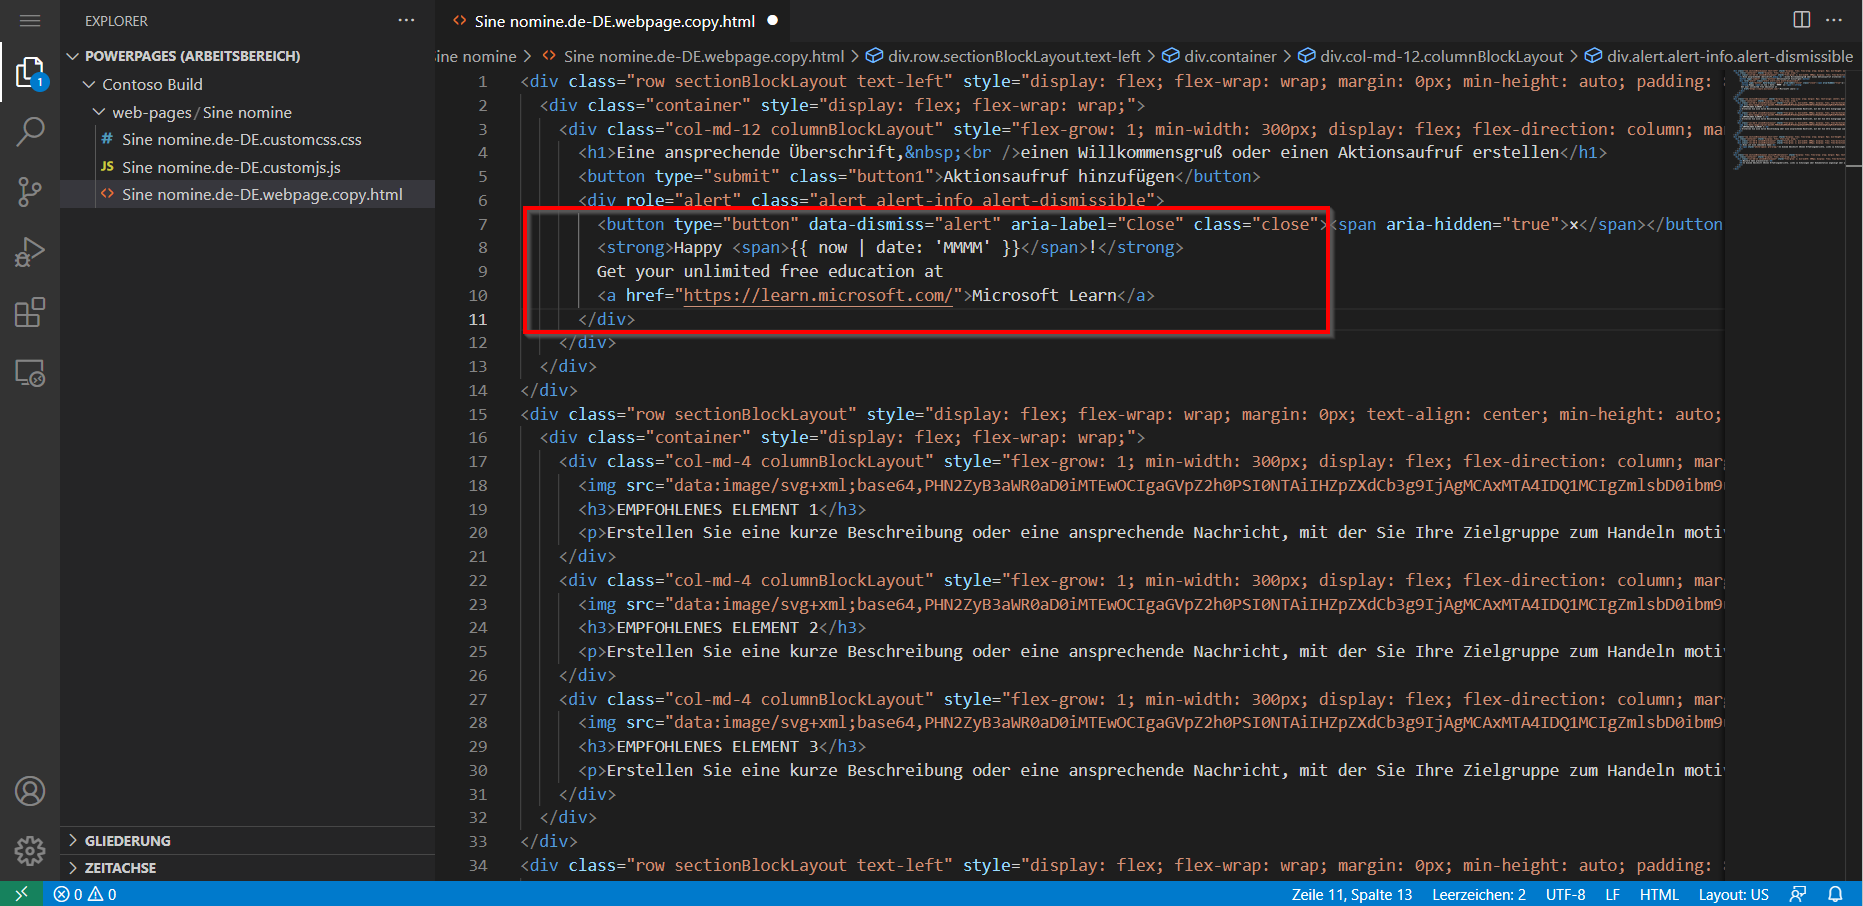 Screenshot des Seiteninhalts, der in Visual Studio Code für den Web-Editor geöffnet wurde, mit hervorgehobenem neuen Inhalt